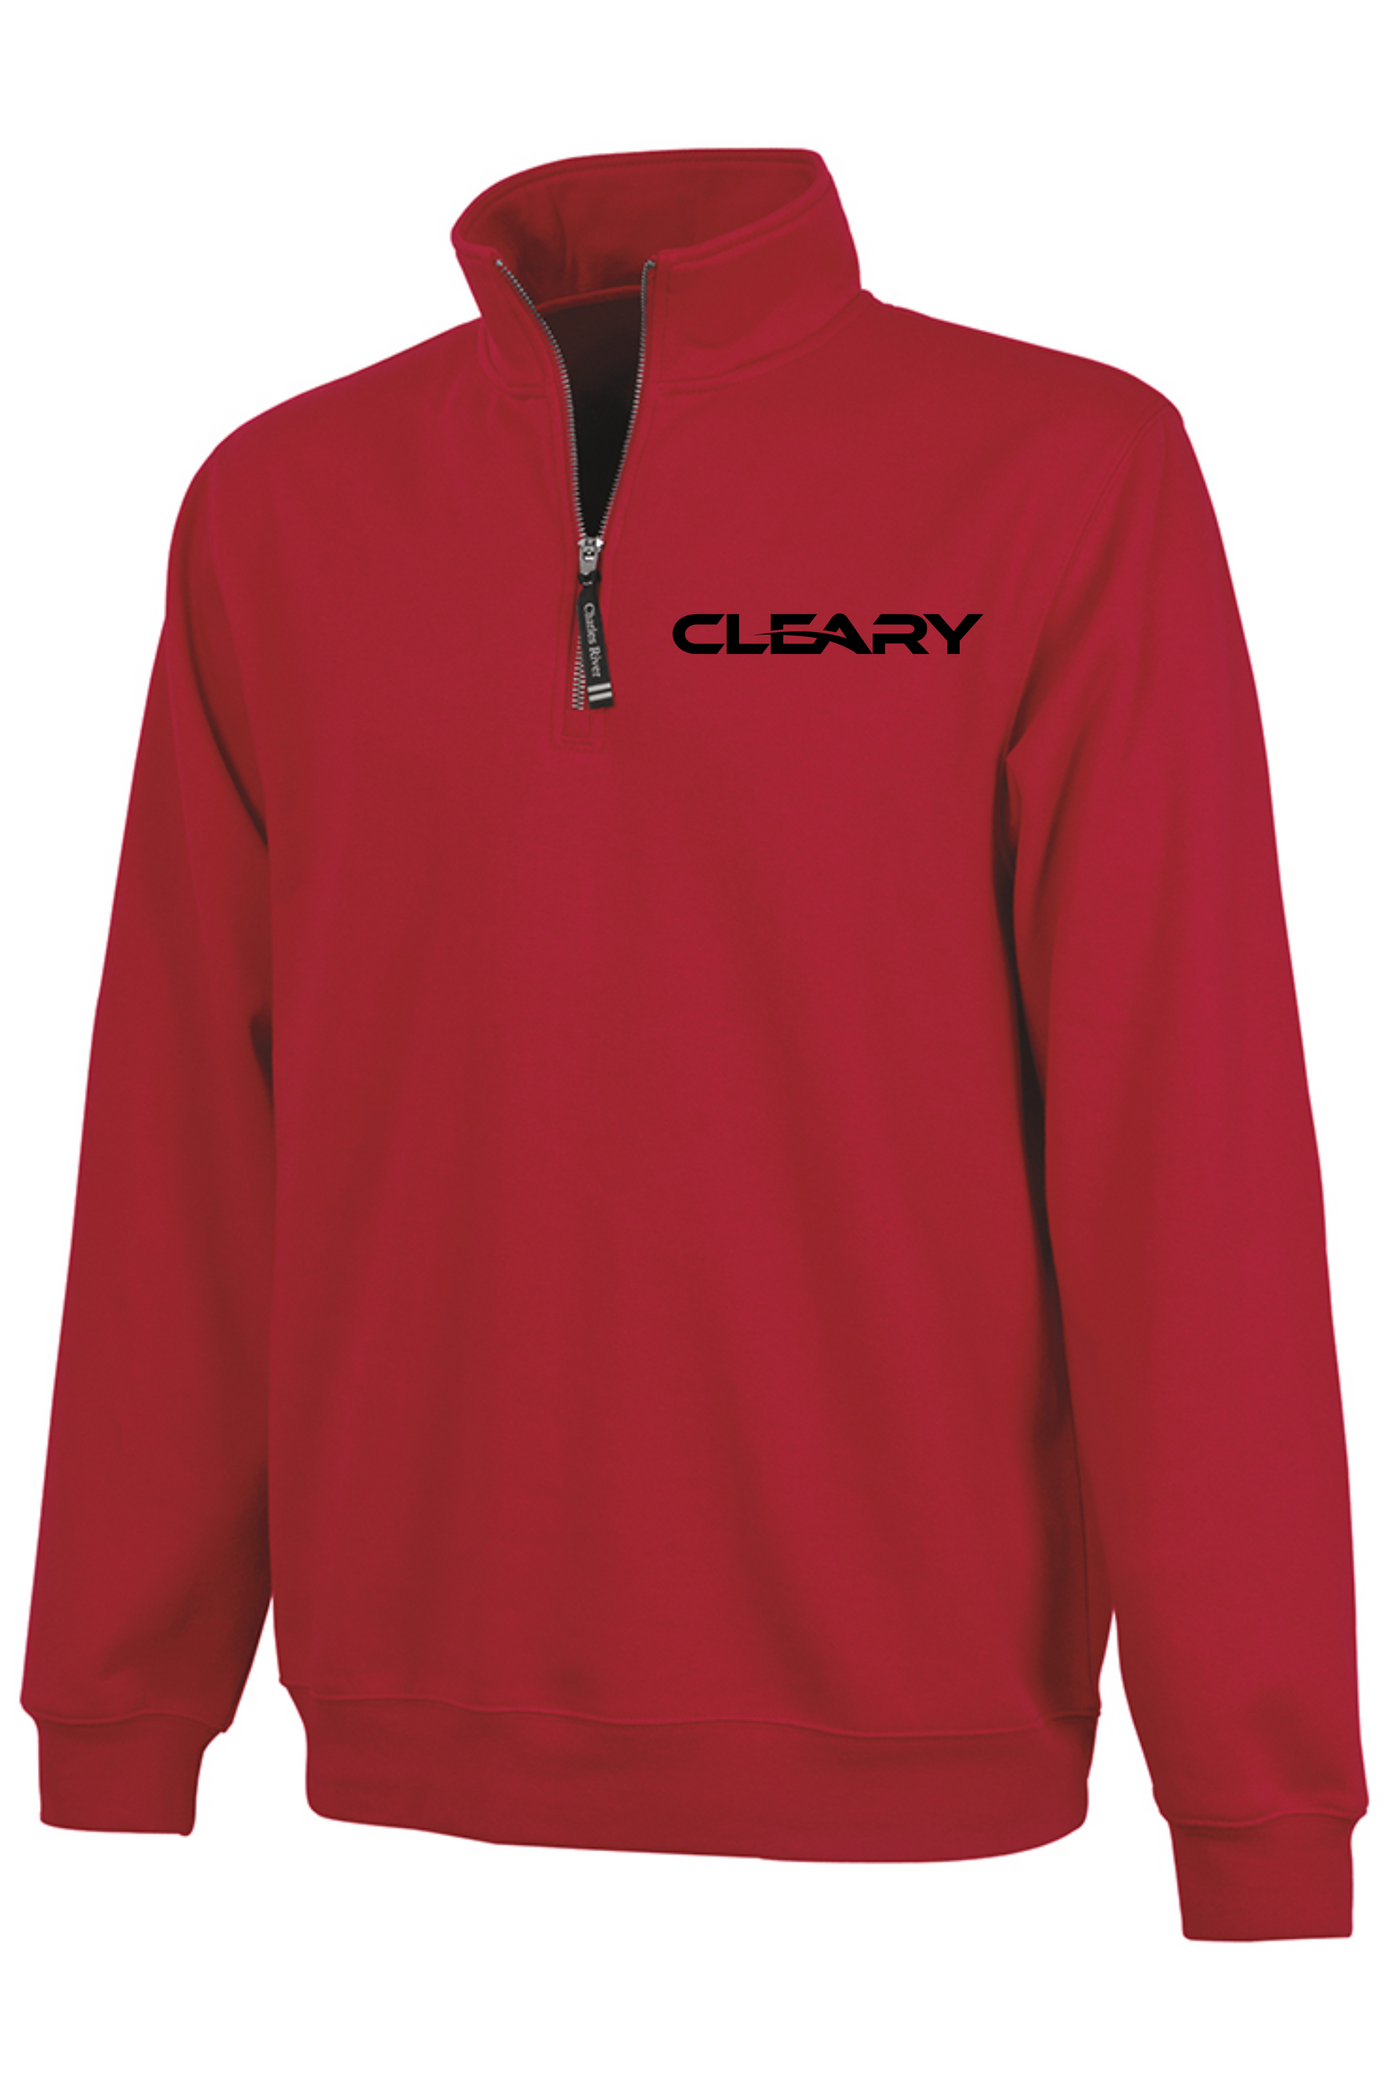 Cleary's Crosswind Quarter Zip Sweatshirt Red